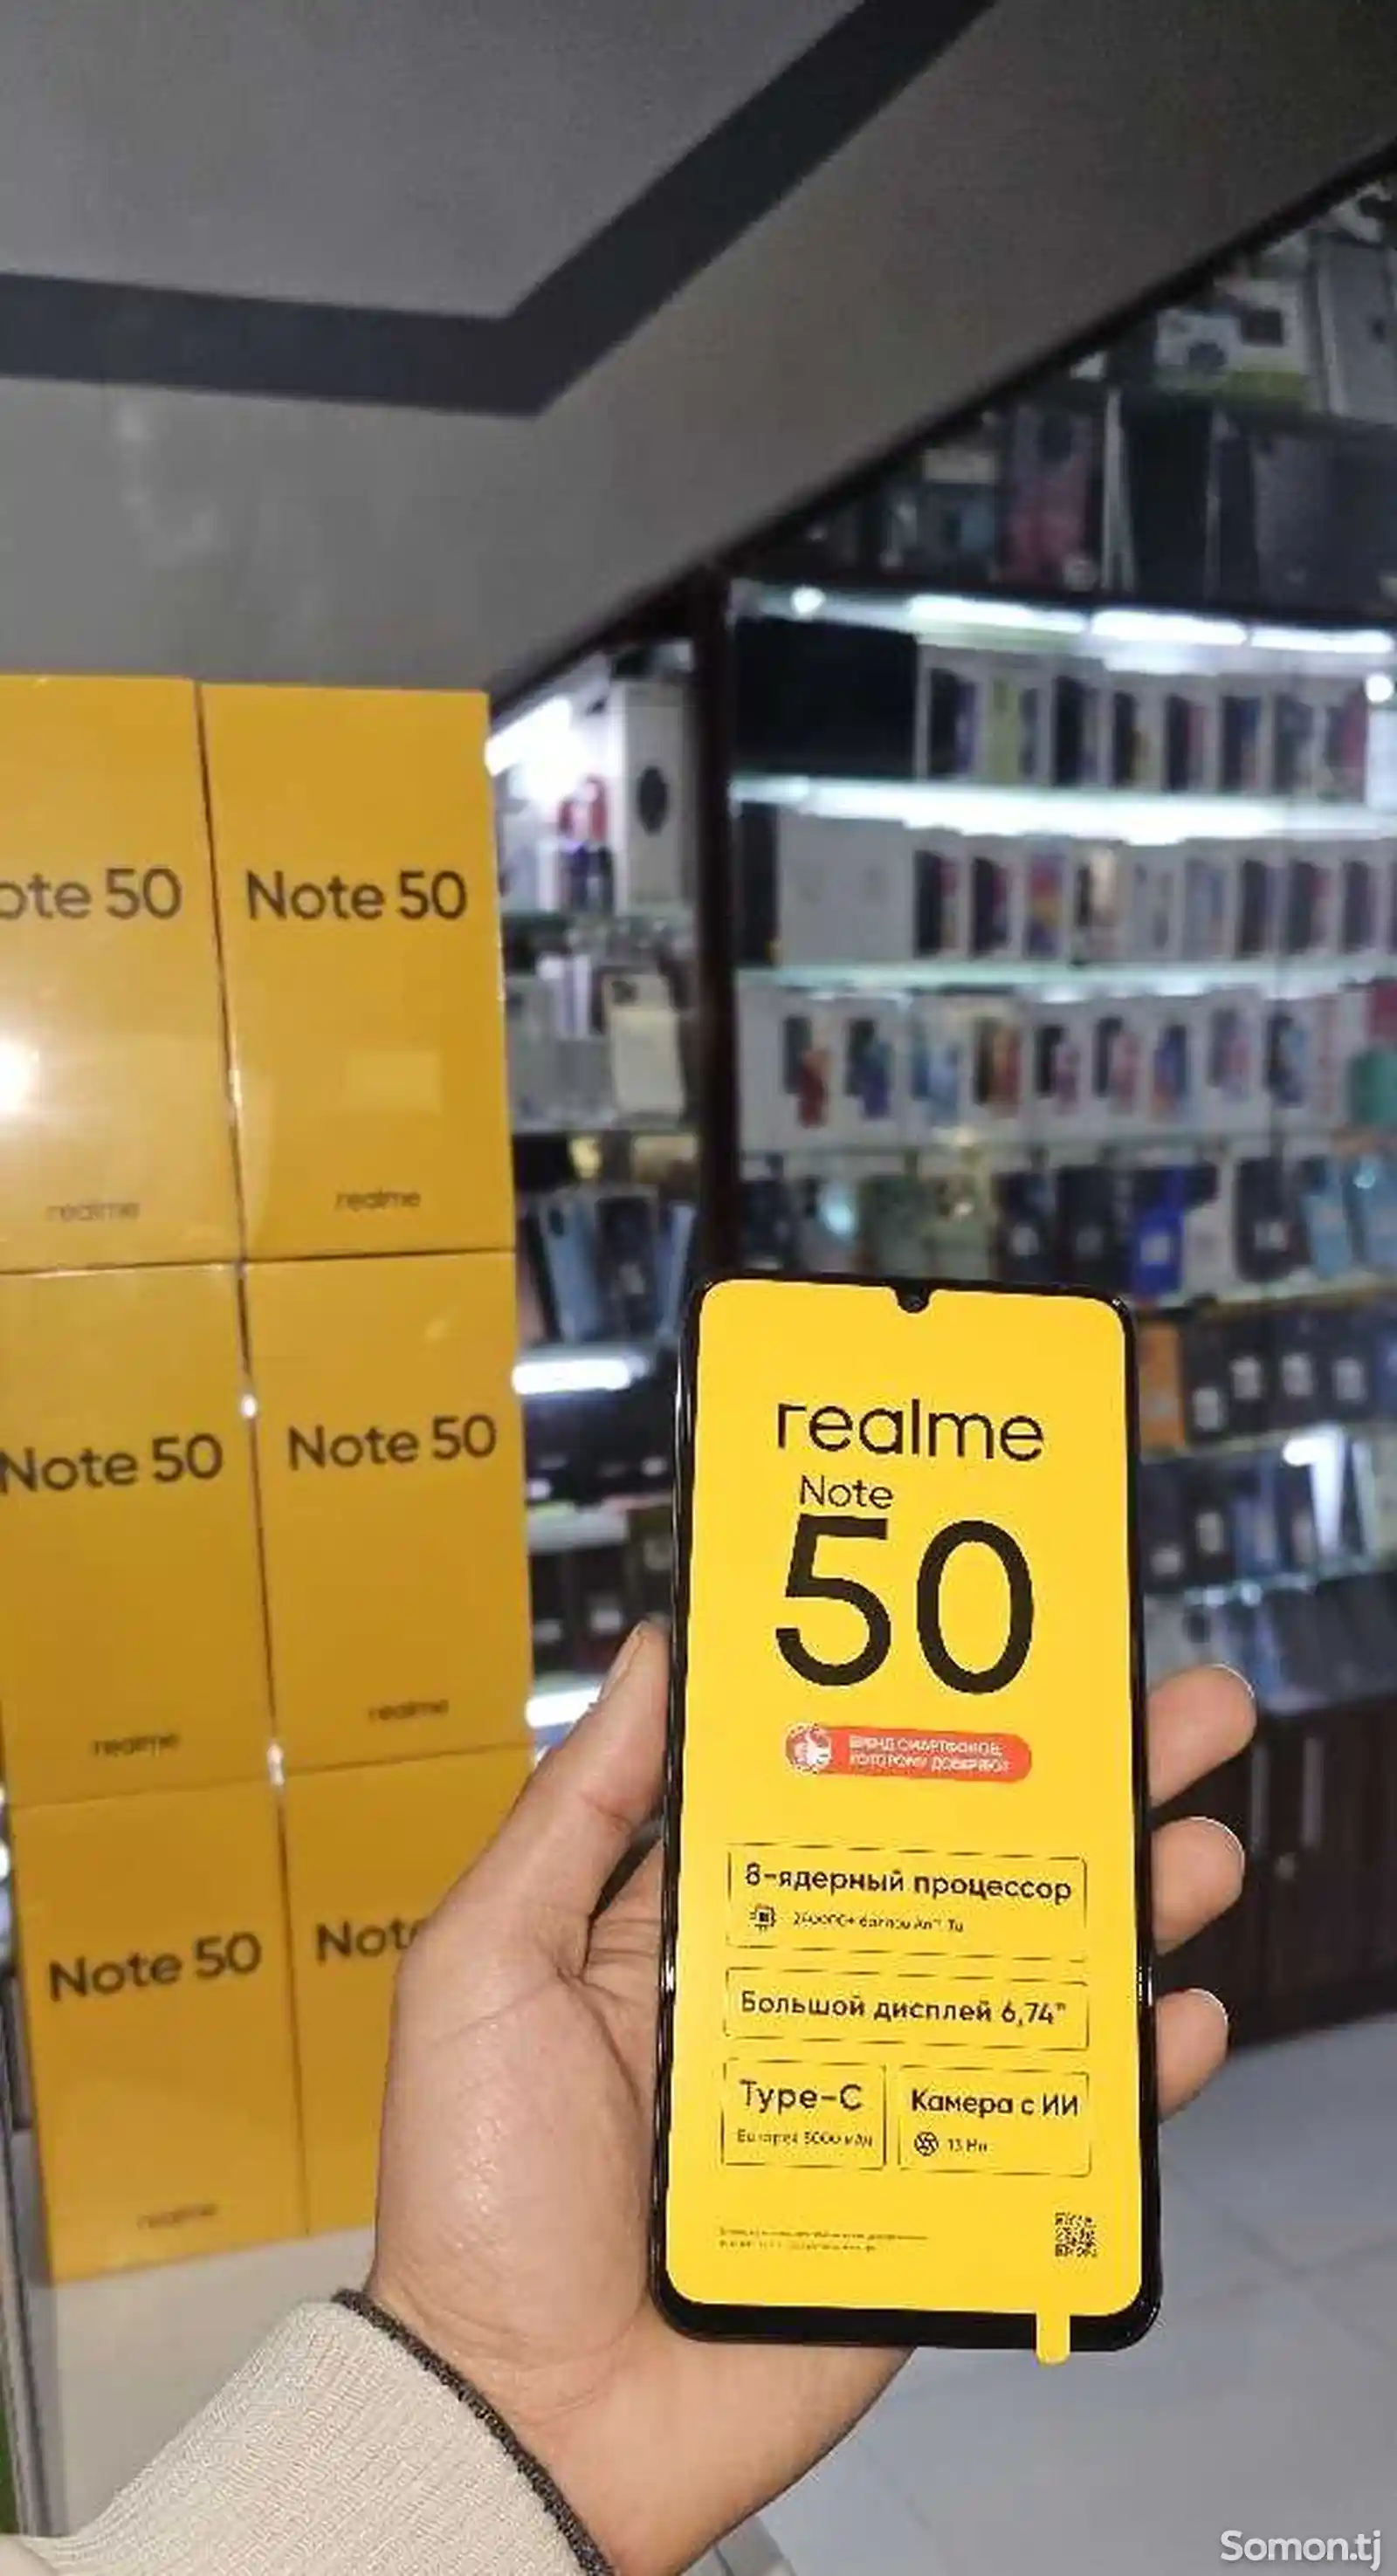 Realme Note 50 64G-5